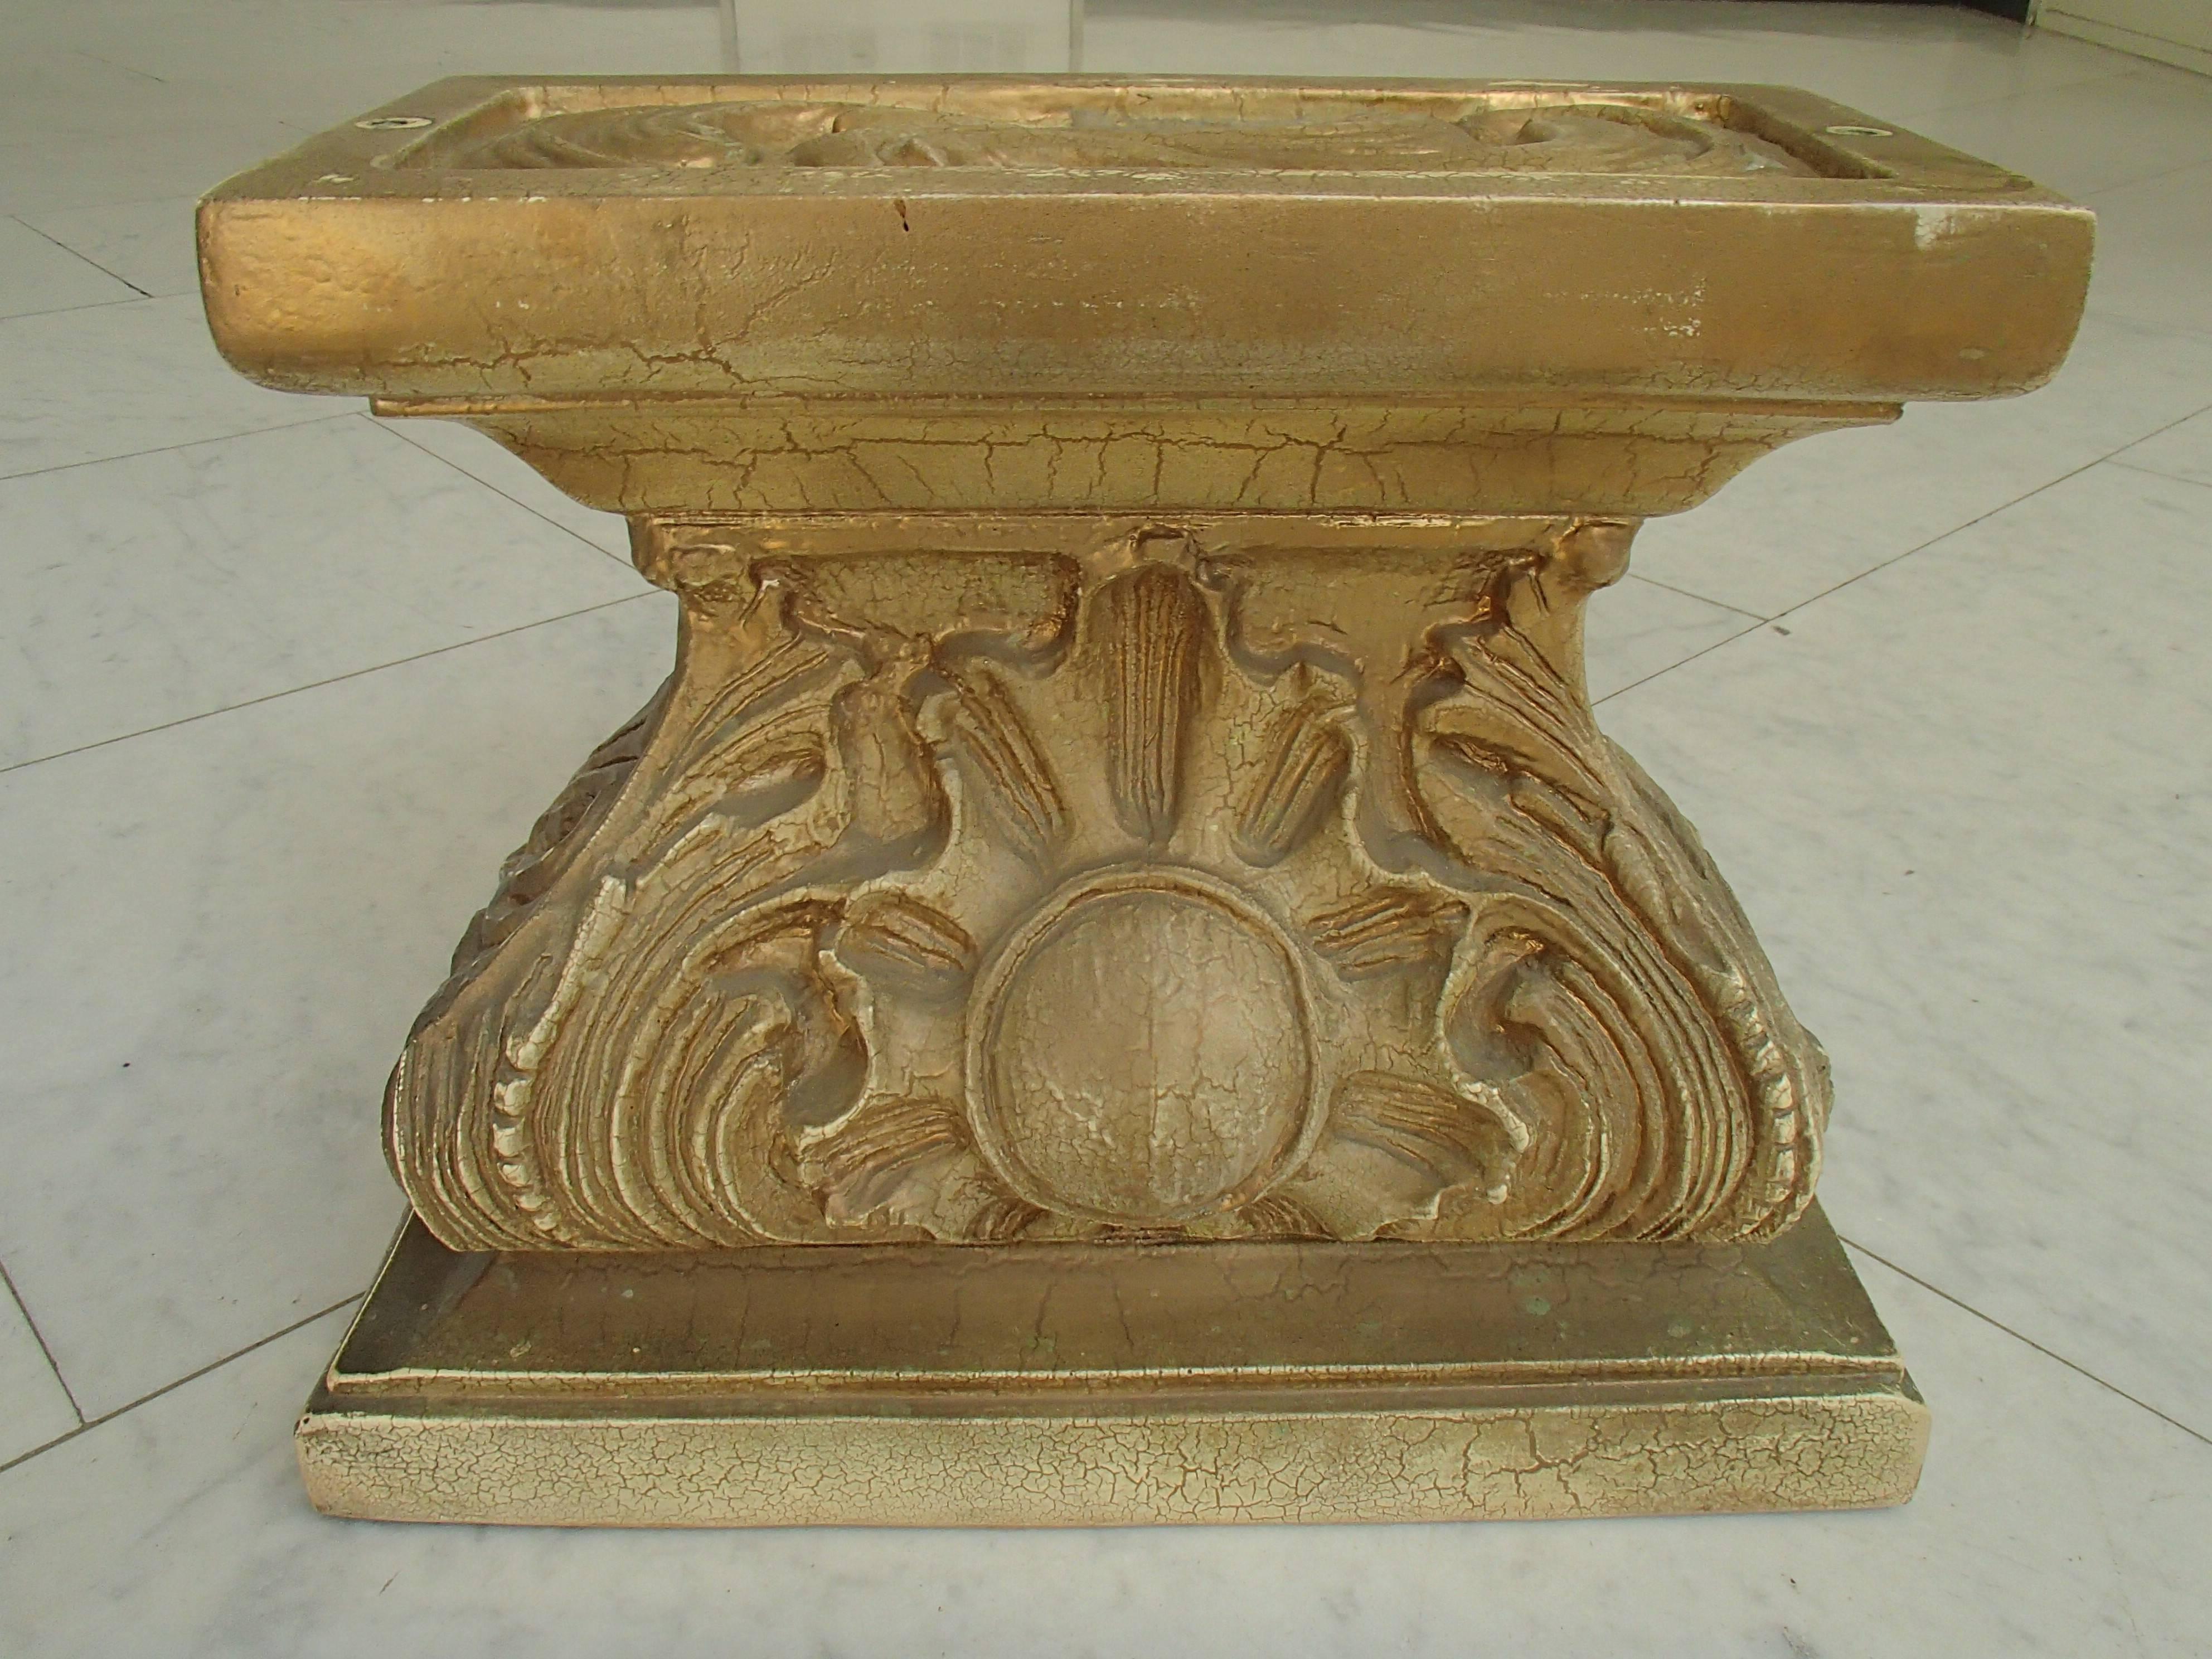 Paire de pieds en bois doré et plâtre du milieu du siècle, de style baroque rococo, pouvant servir d'étagère à une ou deux tables basses. Le verre n'est pas inclus, c'est juste pour les photos.